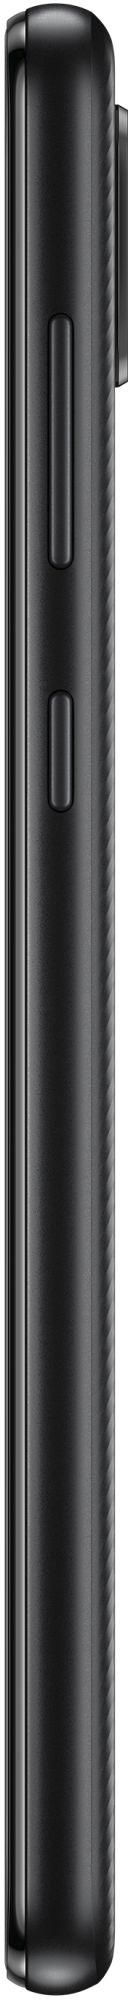 Samsung Galaxy A02 32GB Black